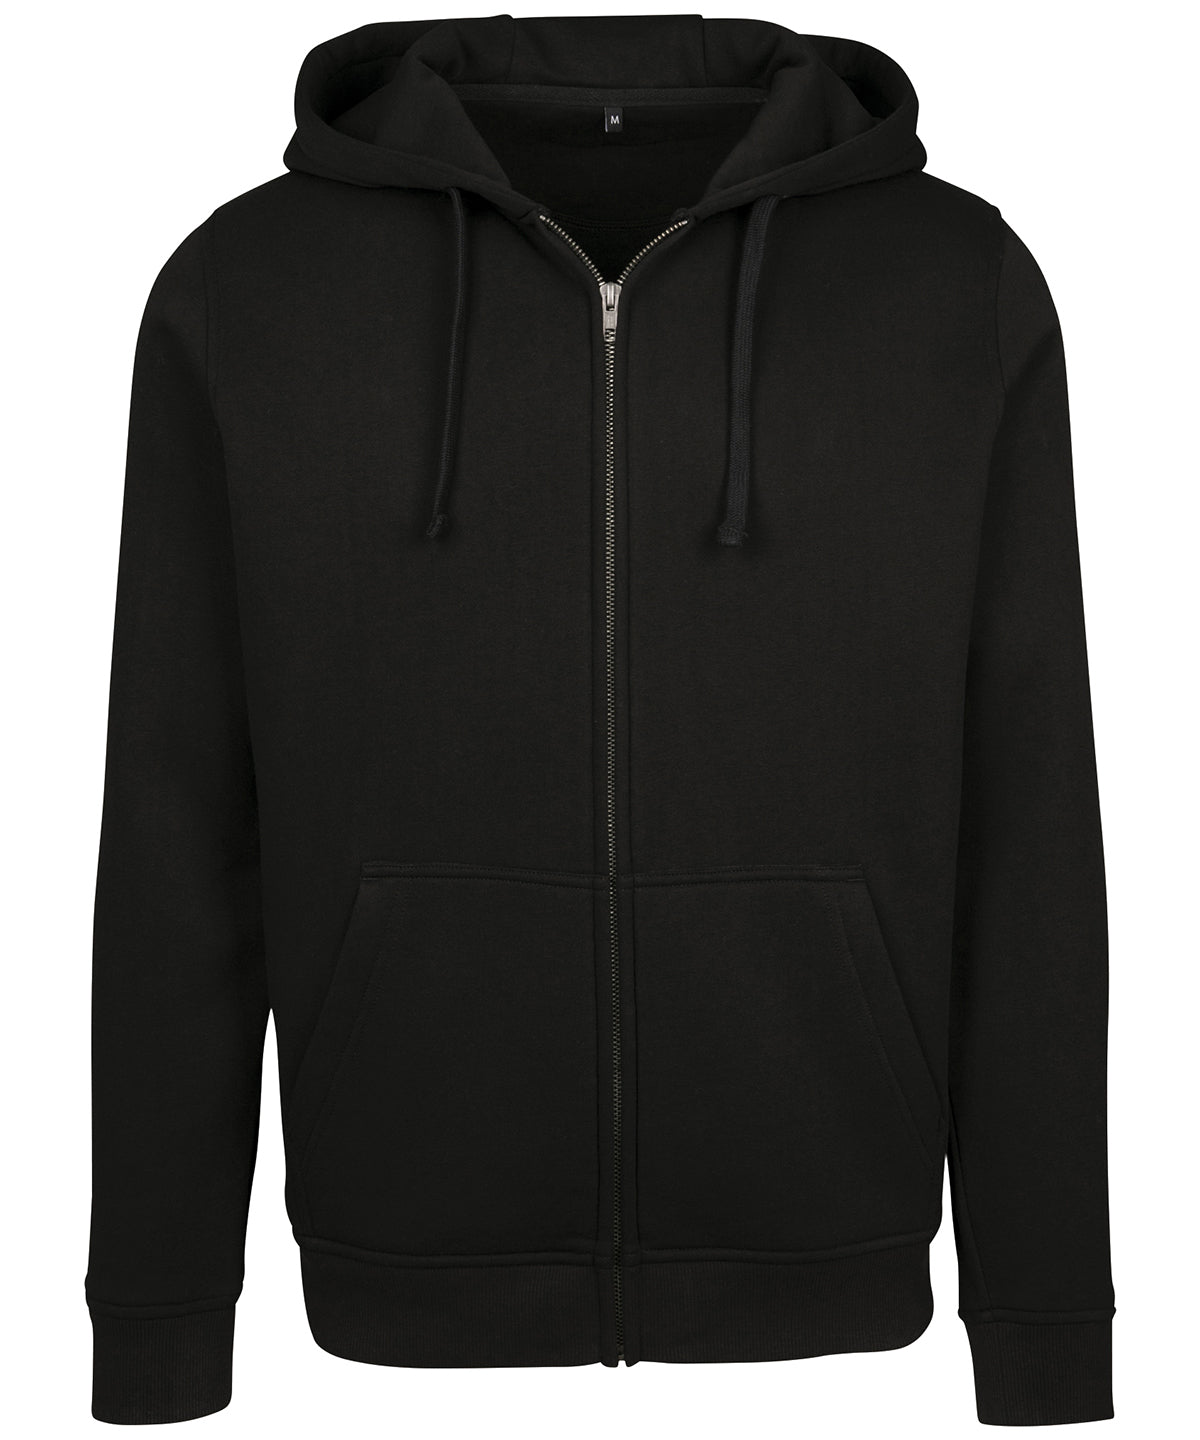 Personalised Hoodies - Black Build Your Brand Merch zip hoodie